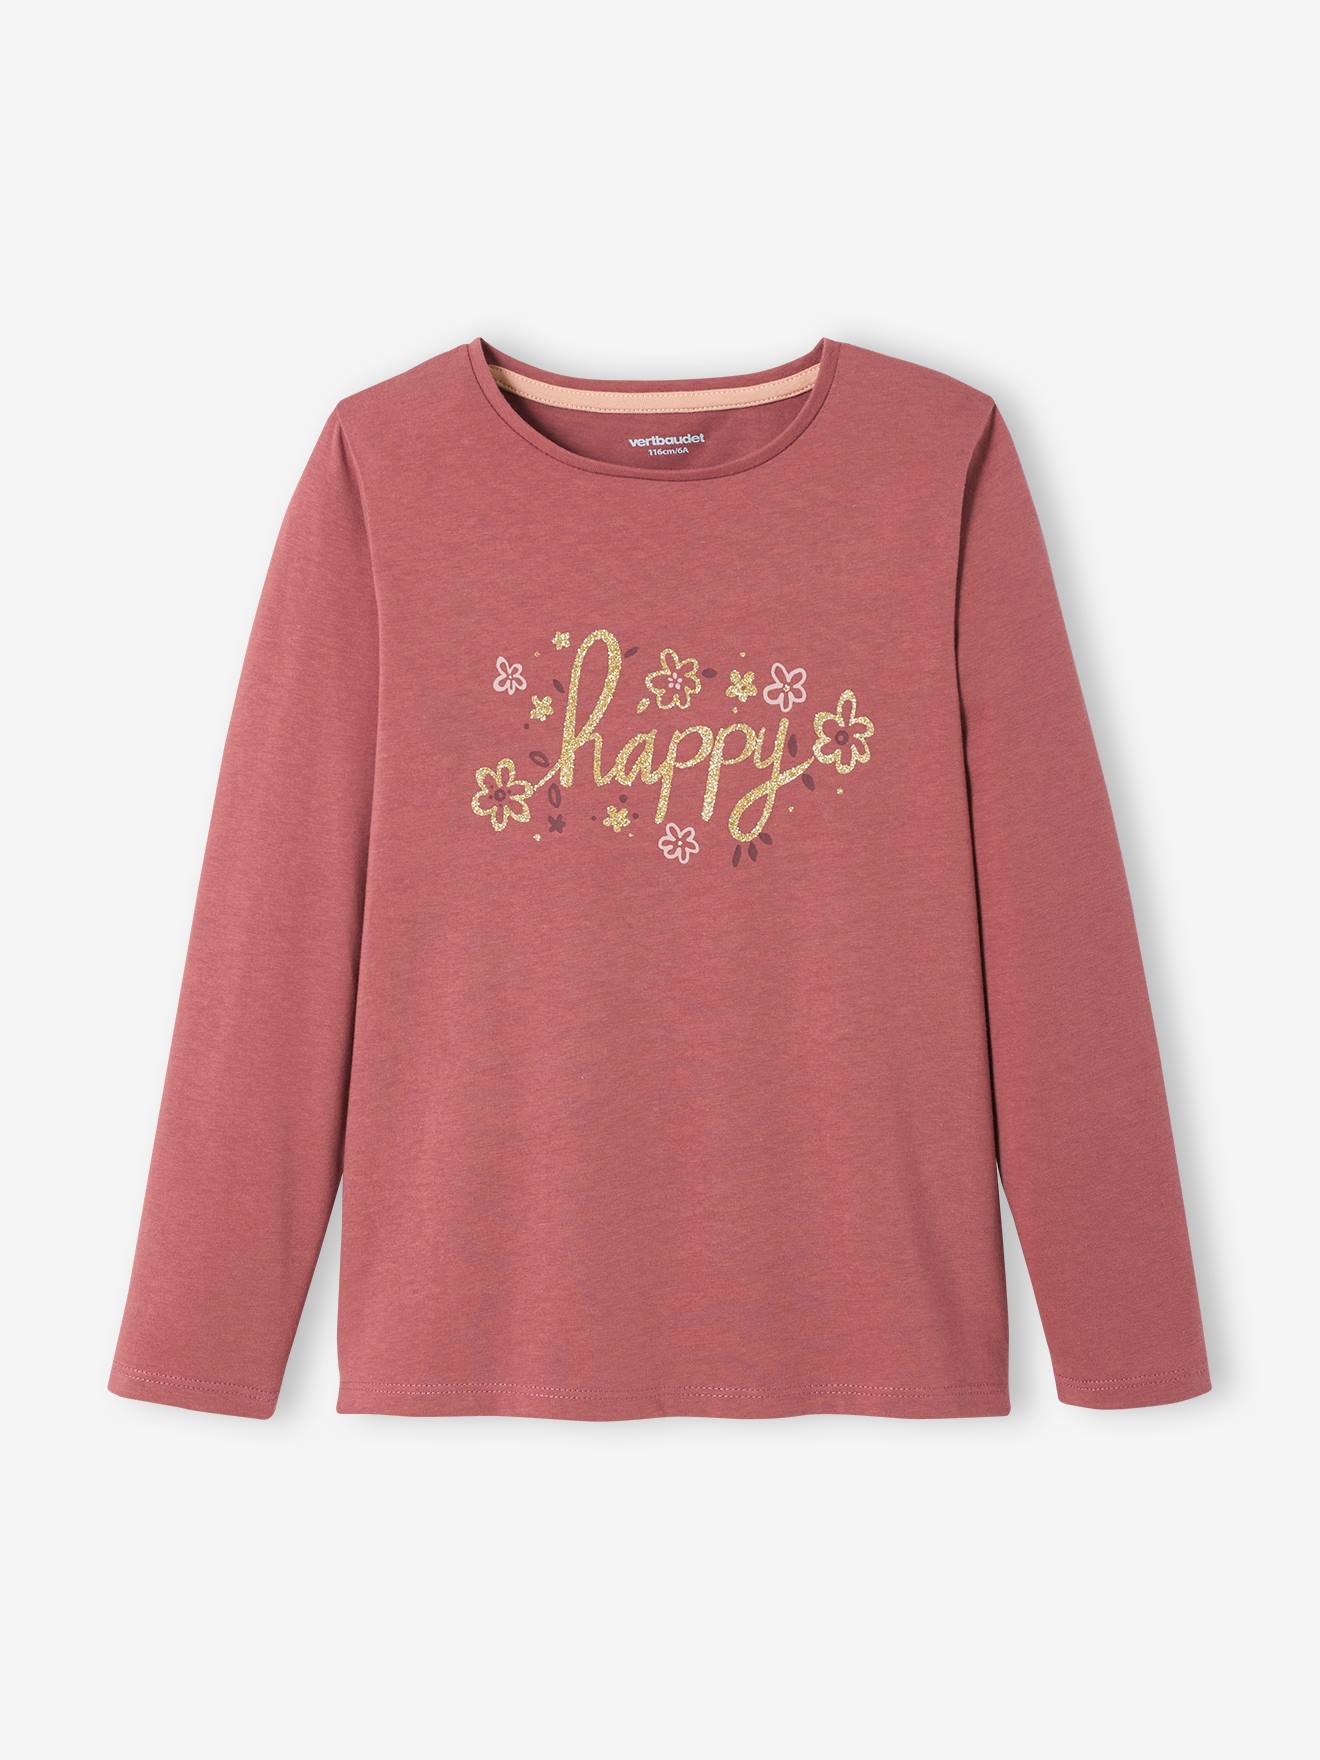 T-shirt met tekst voor meisjes roze